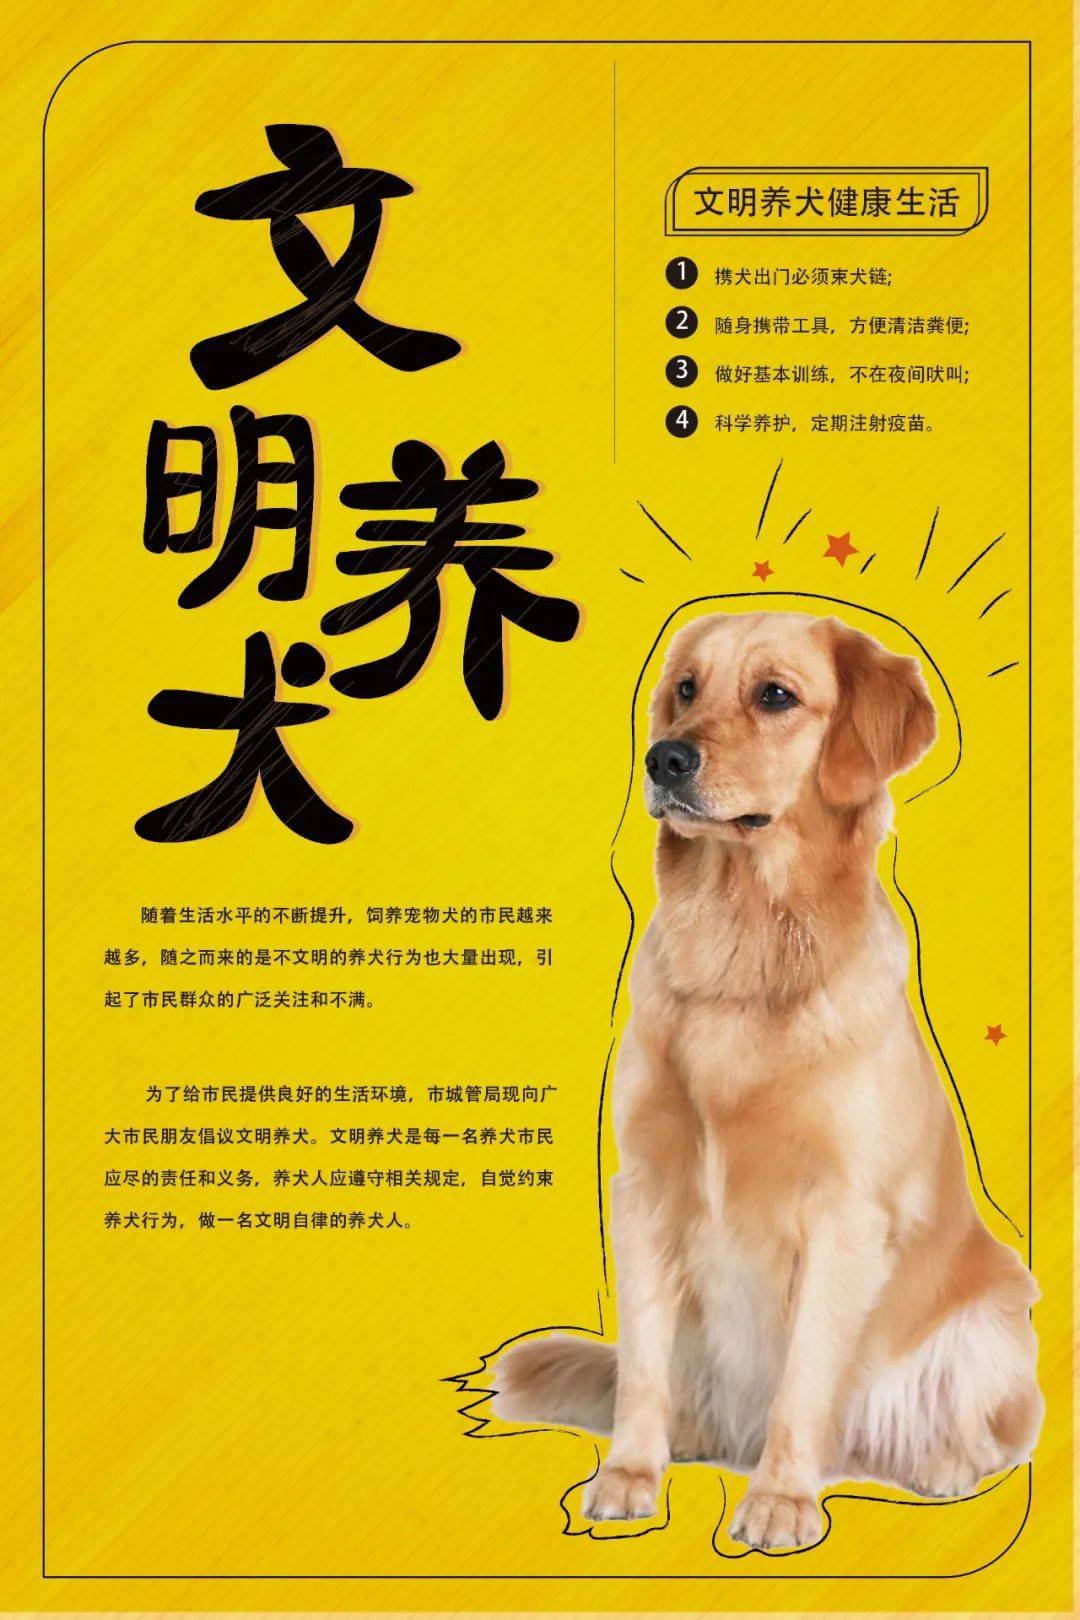 文明养犬公益广告图片